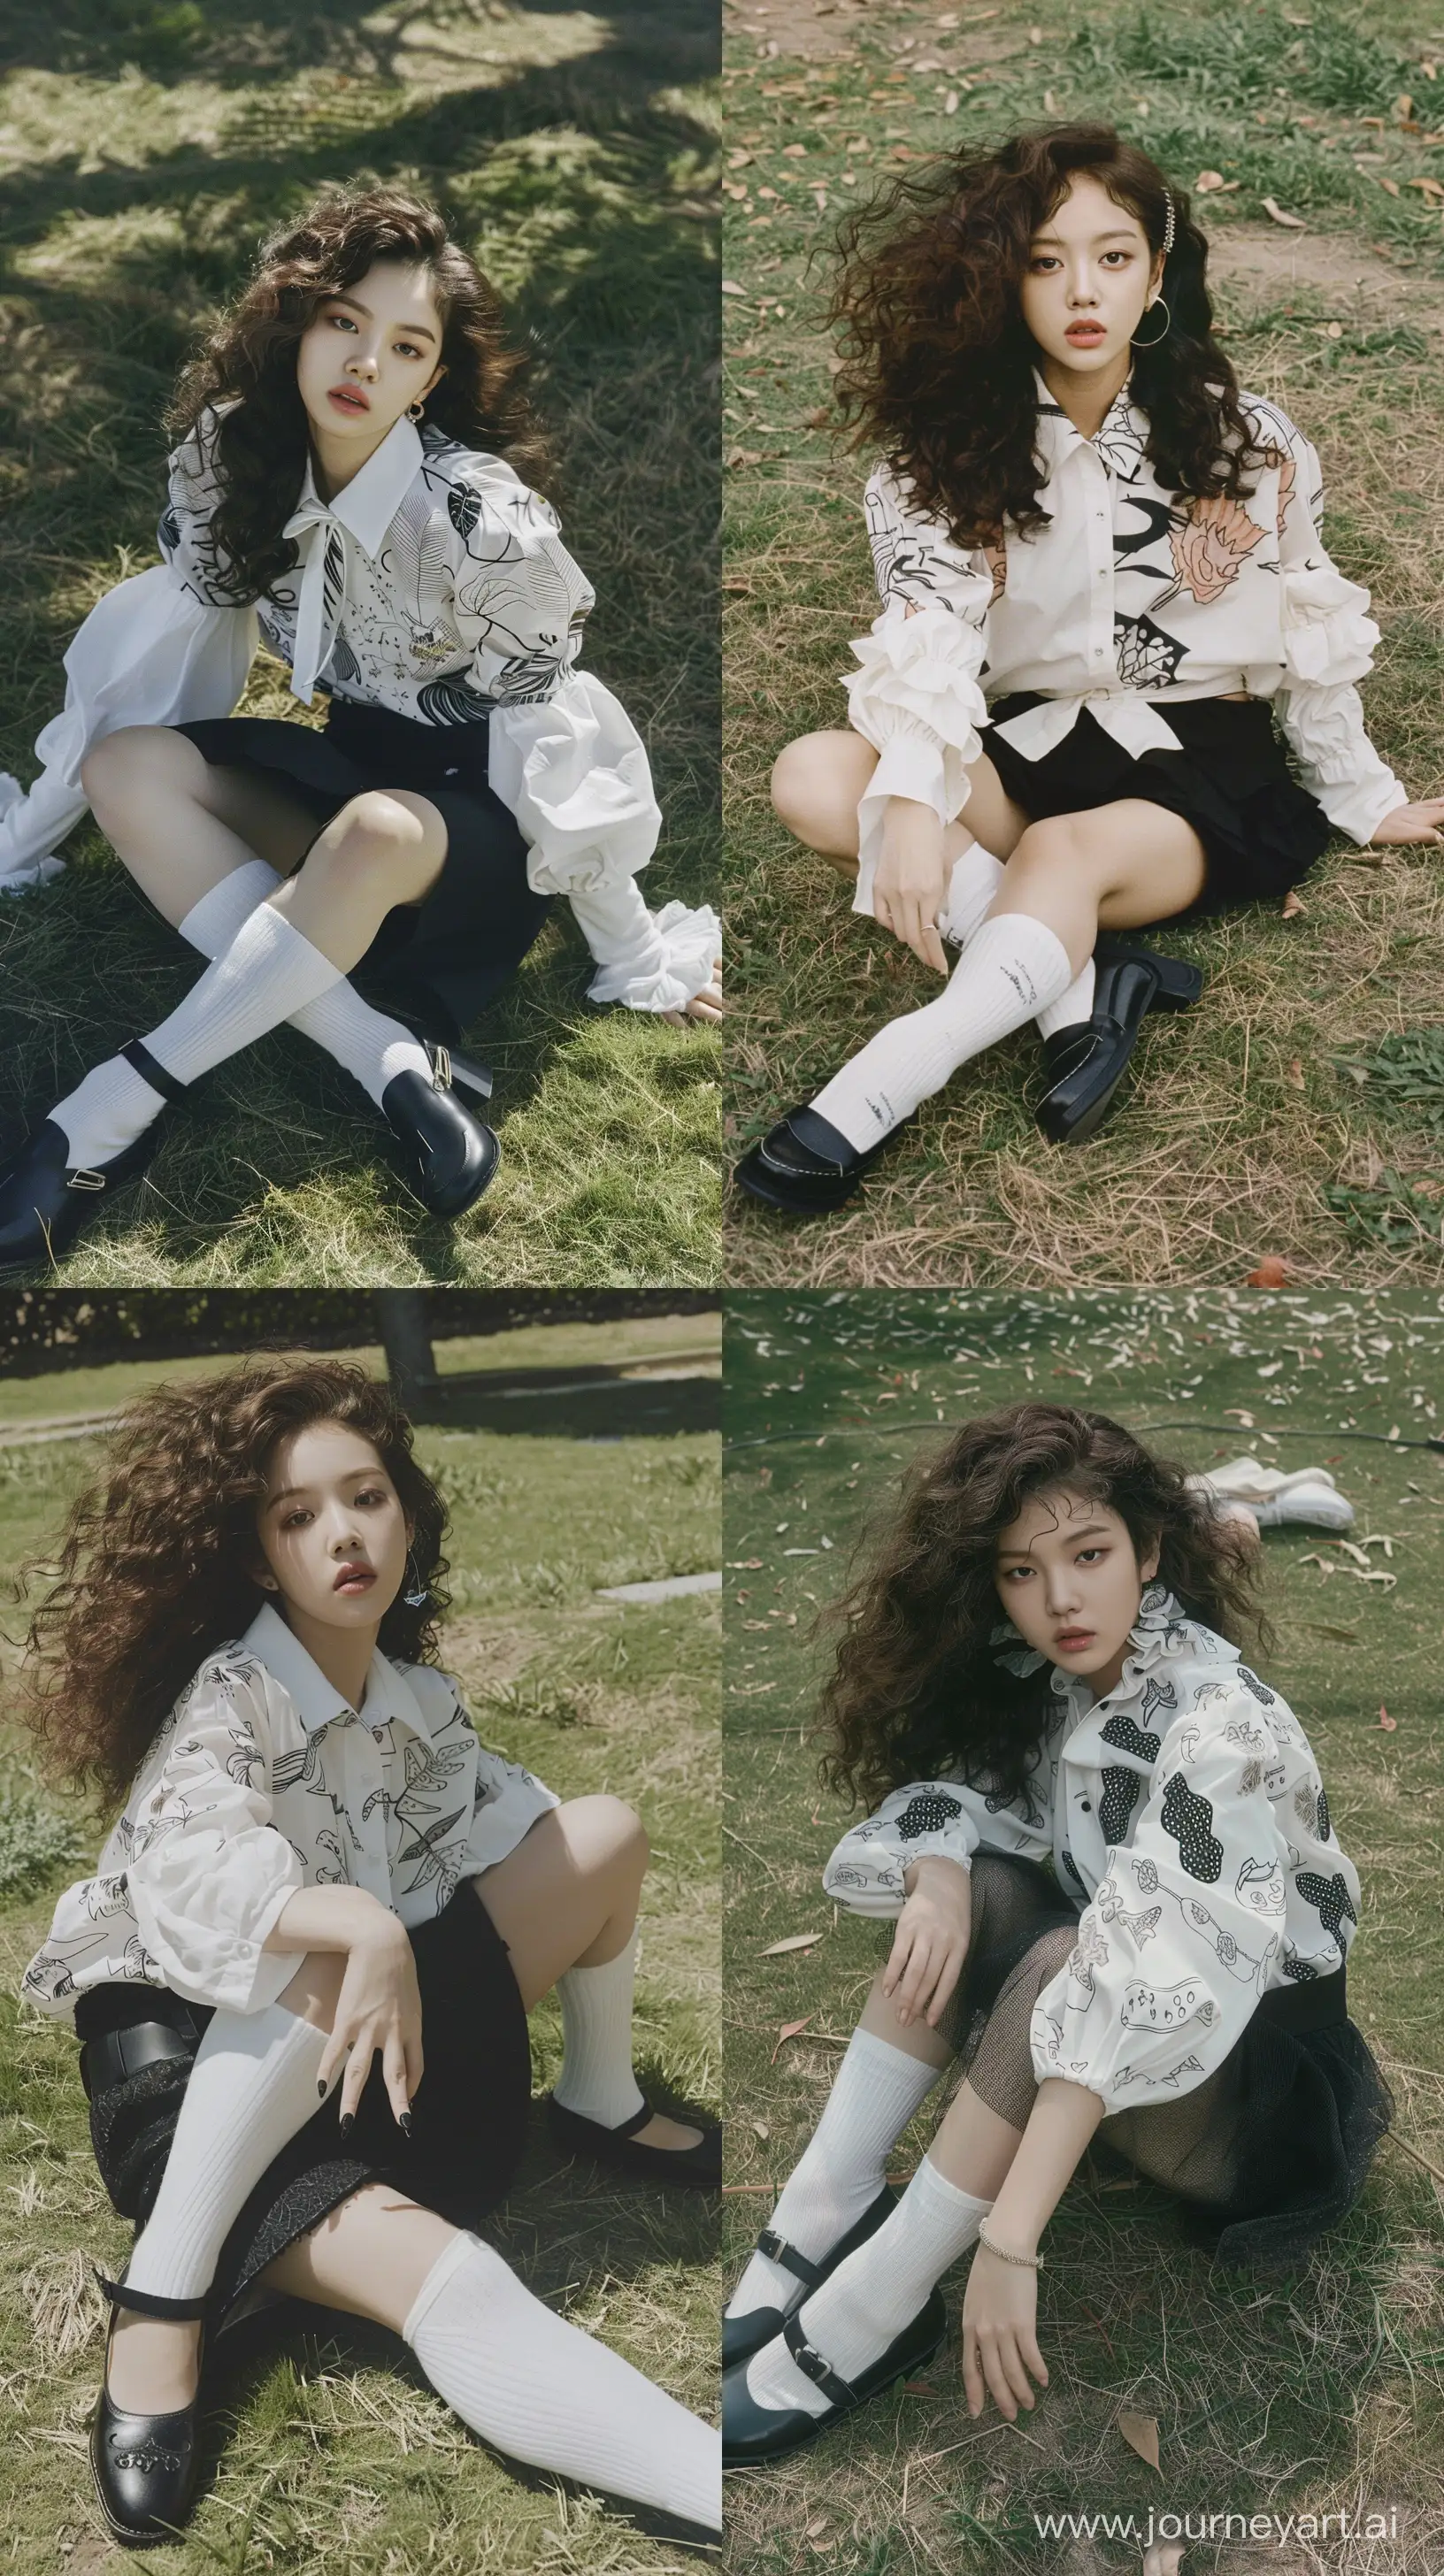 Elegant-Blackpinks-Jennie-in-White-Blouse-and-Black-Skirt-on-Grass